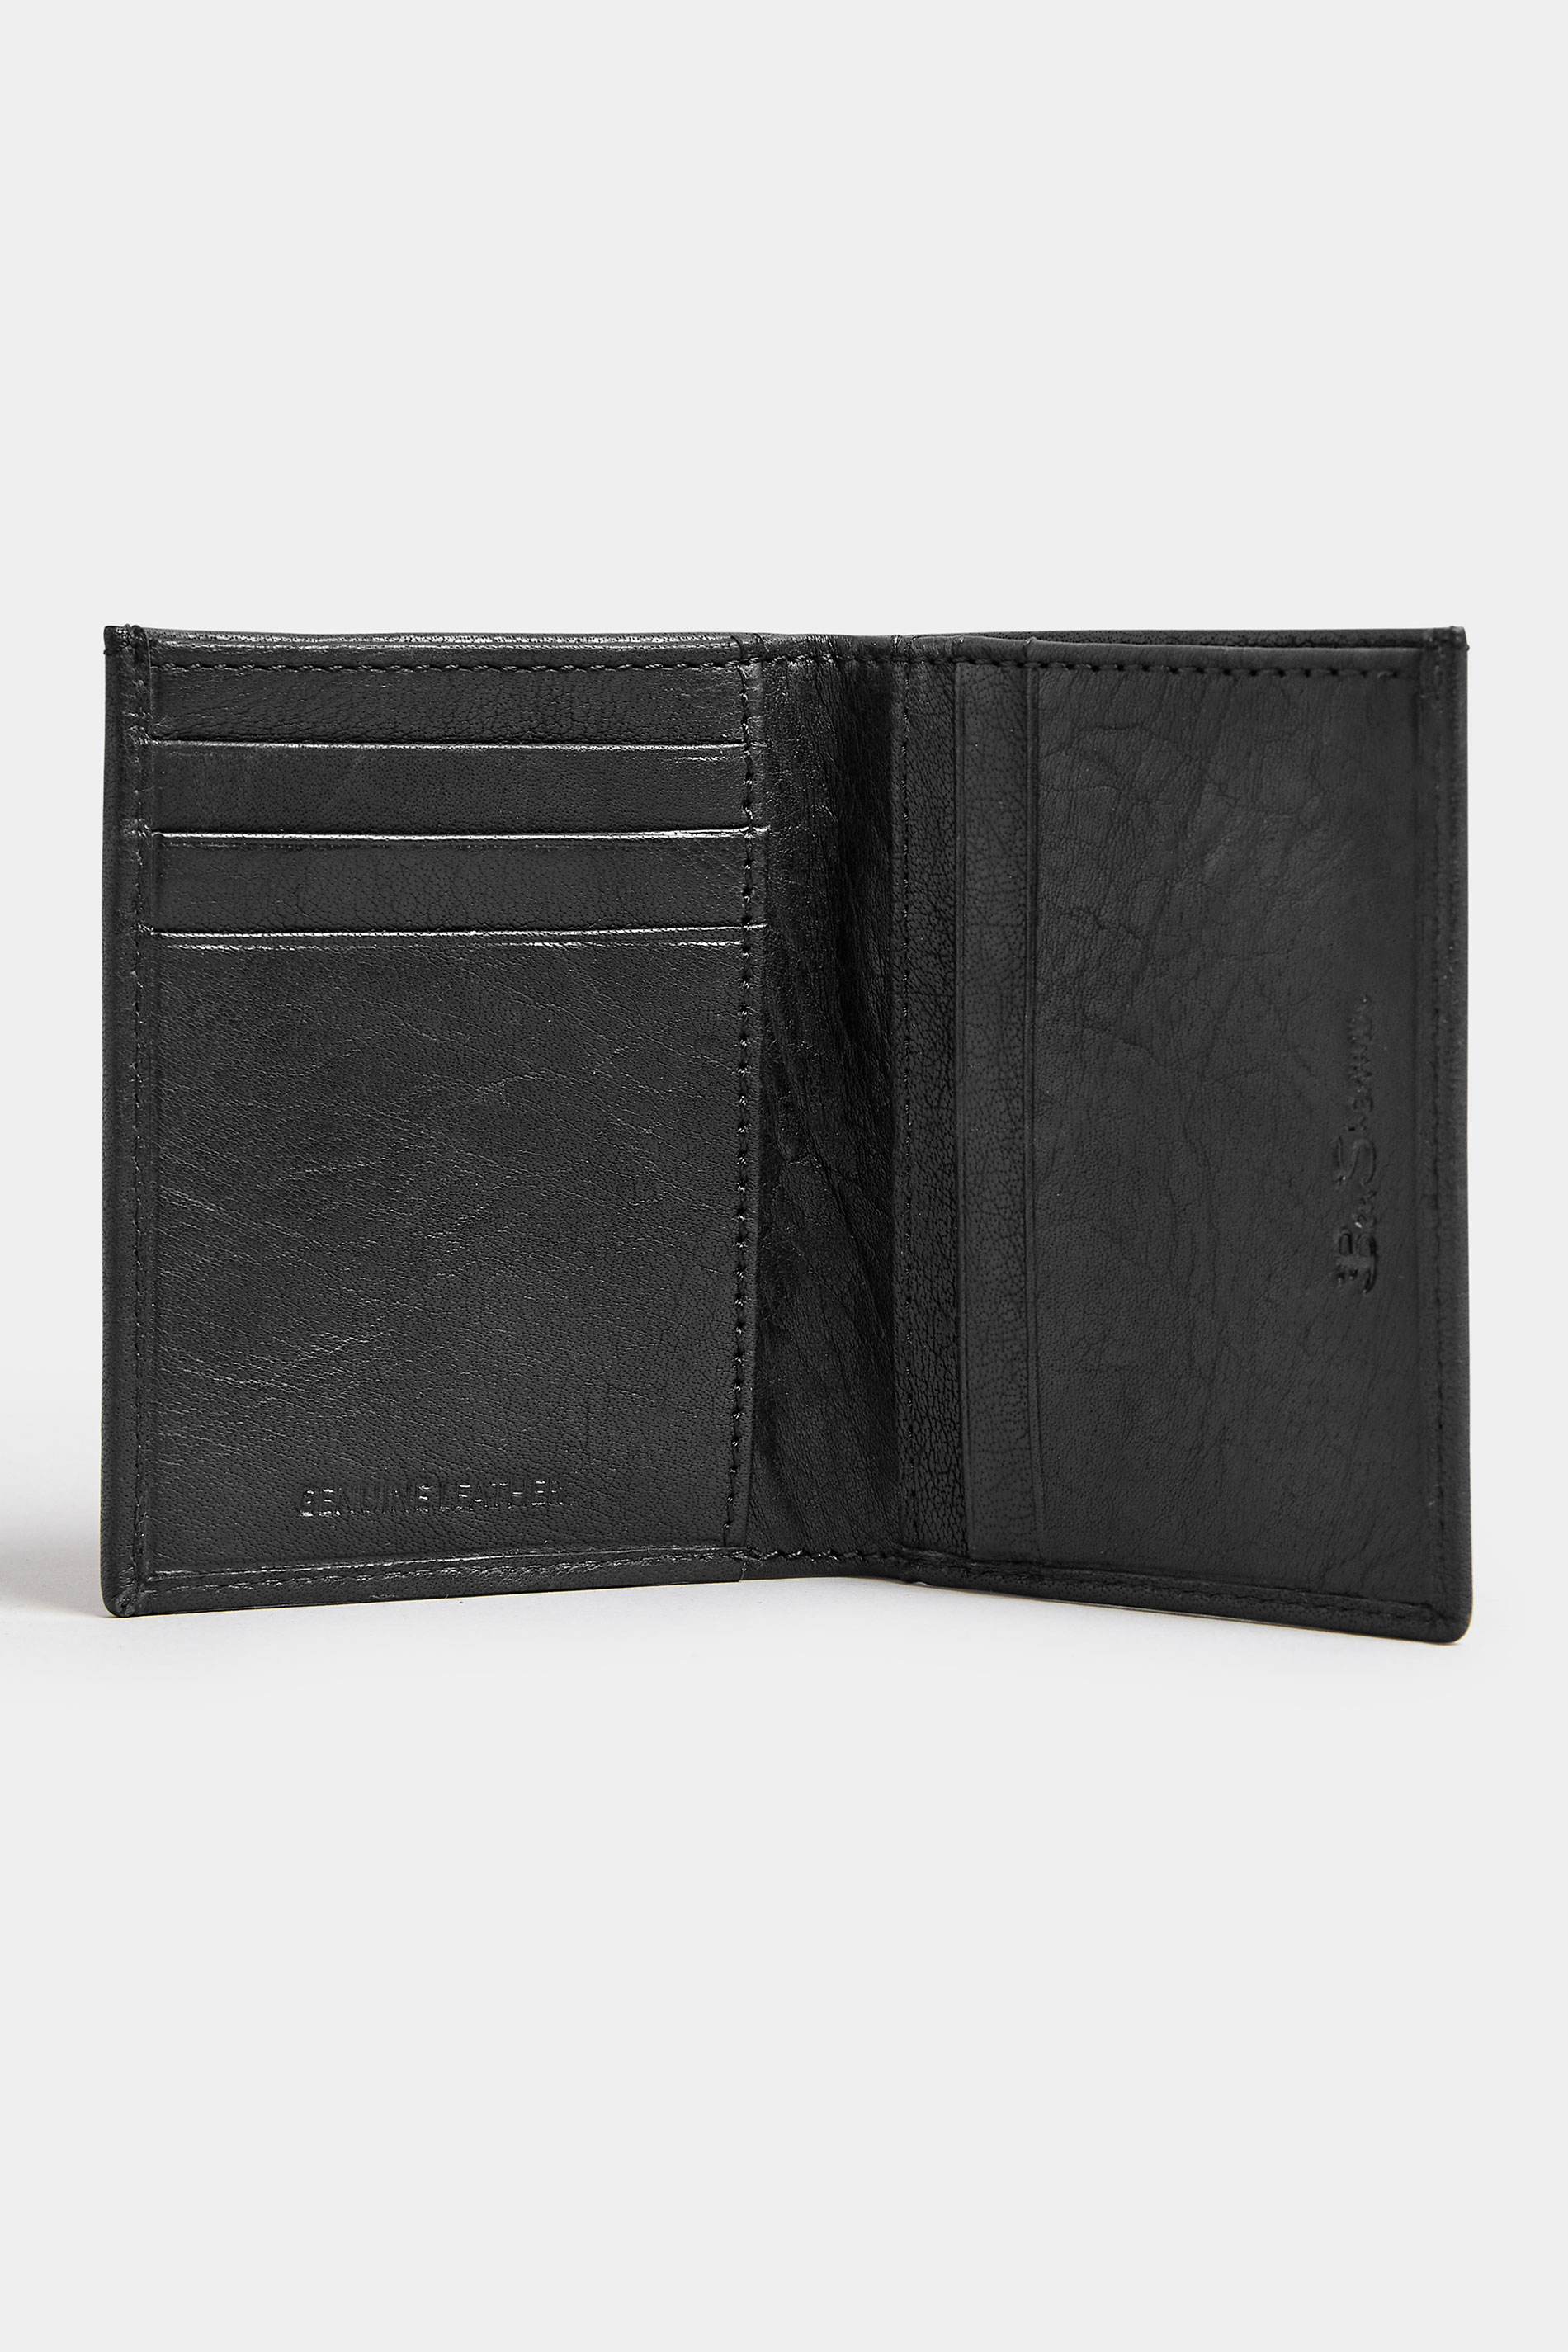 BEN SHERMAN Black Leather 'Webbe' Slimfold Wallet | BadRhino 2